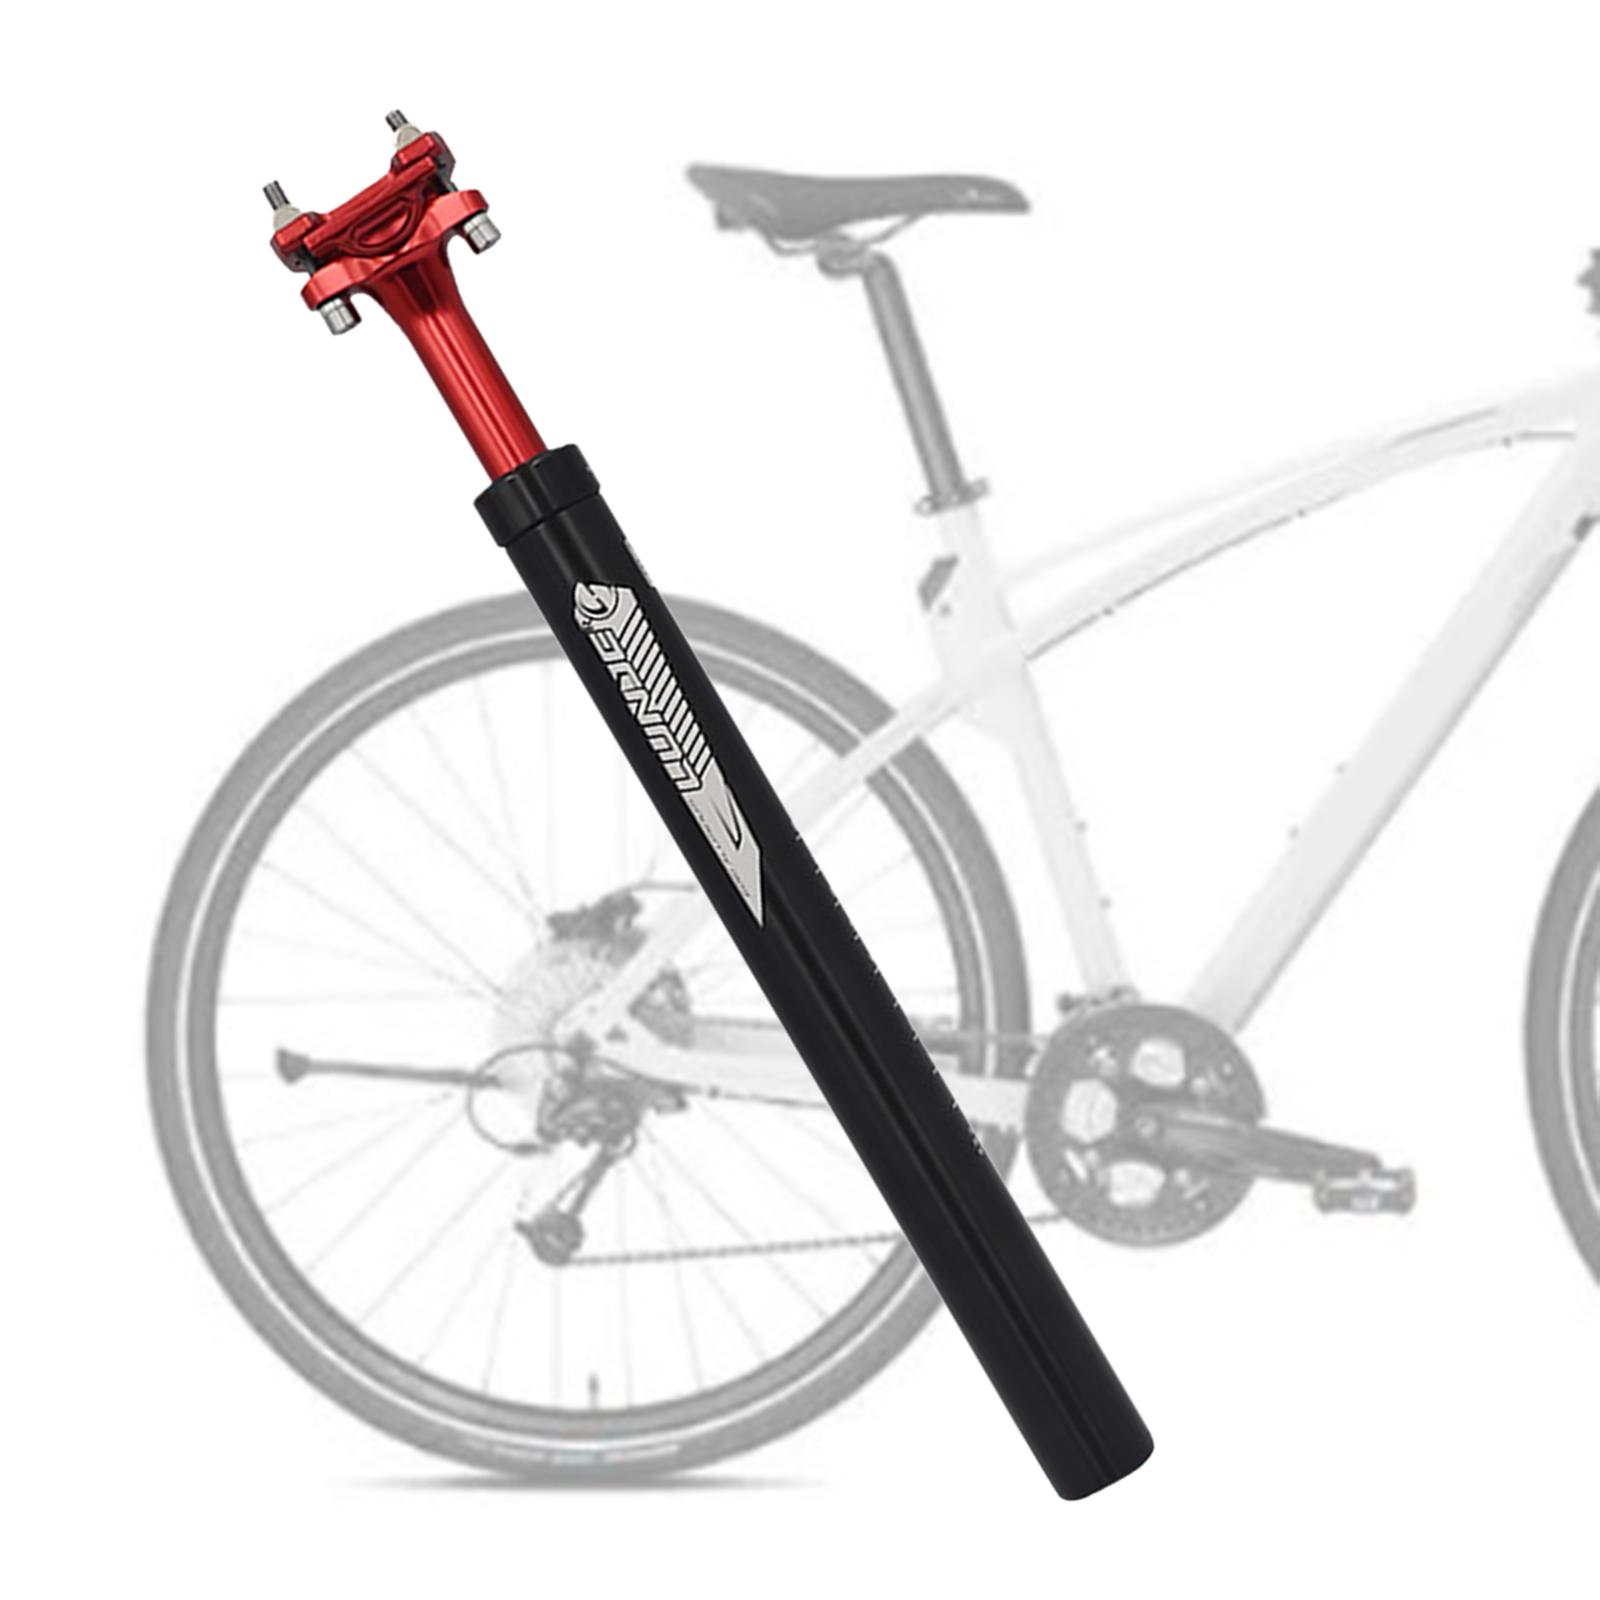 Bike Seatpost Bicycle Shockproof Seat Post Pole Repair 31.6mm Red